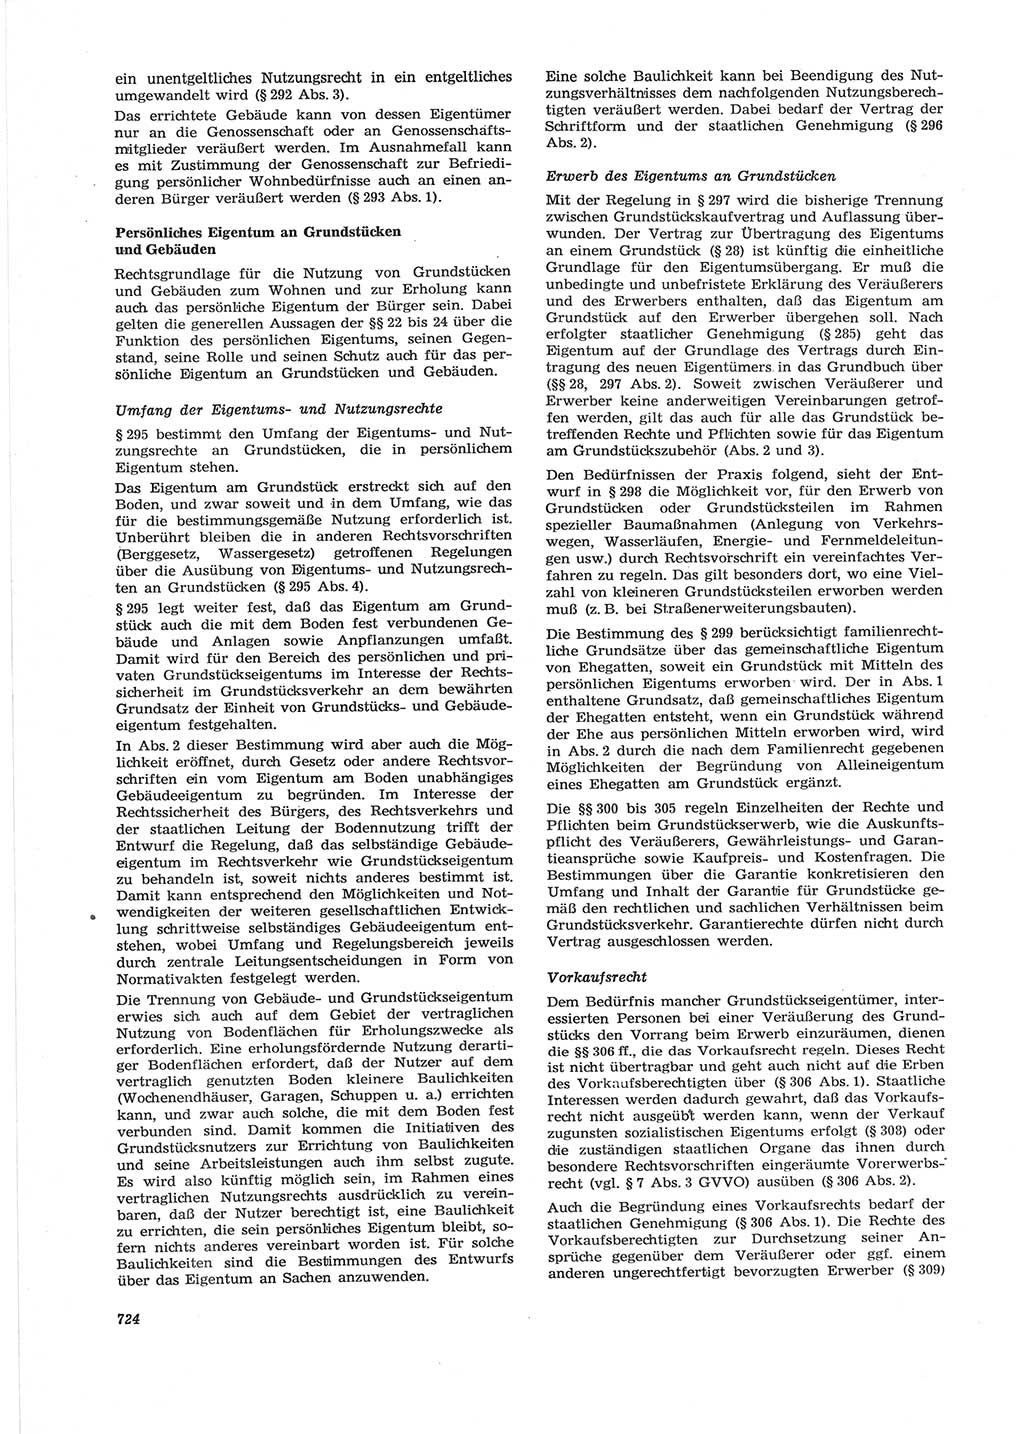 Neue Justiz (NJ), Zeitschrift für Recht und Rechtswissenschaft [Deutsche Demokratische Republik (DDR)], 28. Jahrgang 1974, Seite 724 (NJ DDR 1974, S. 724)